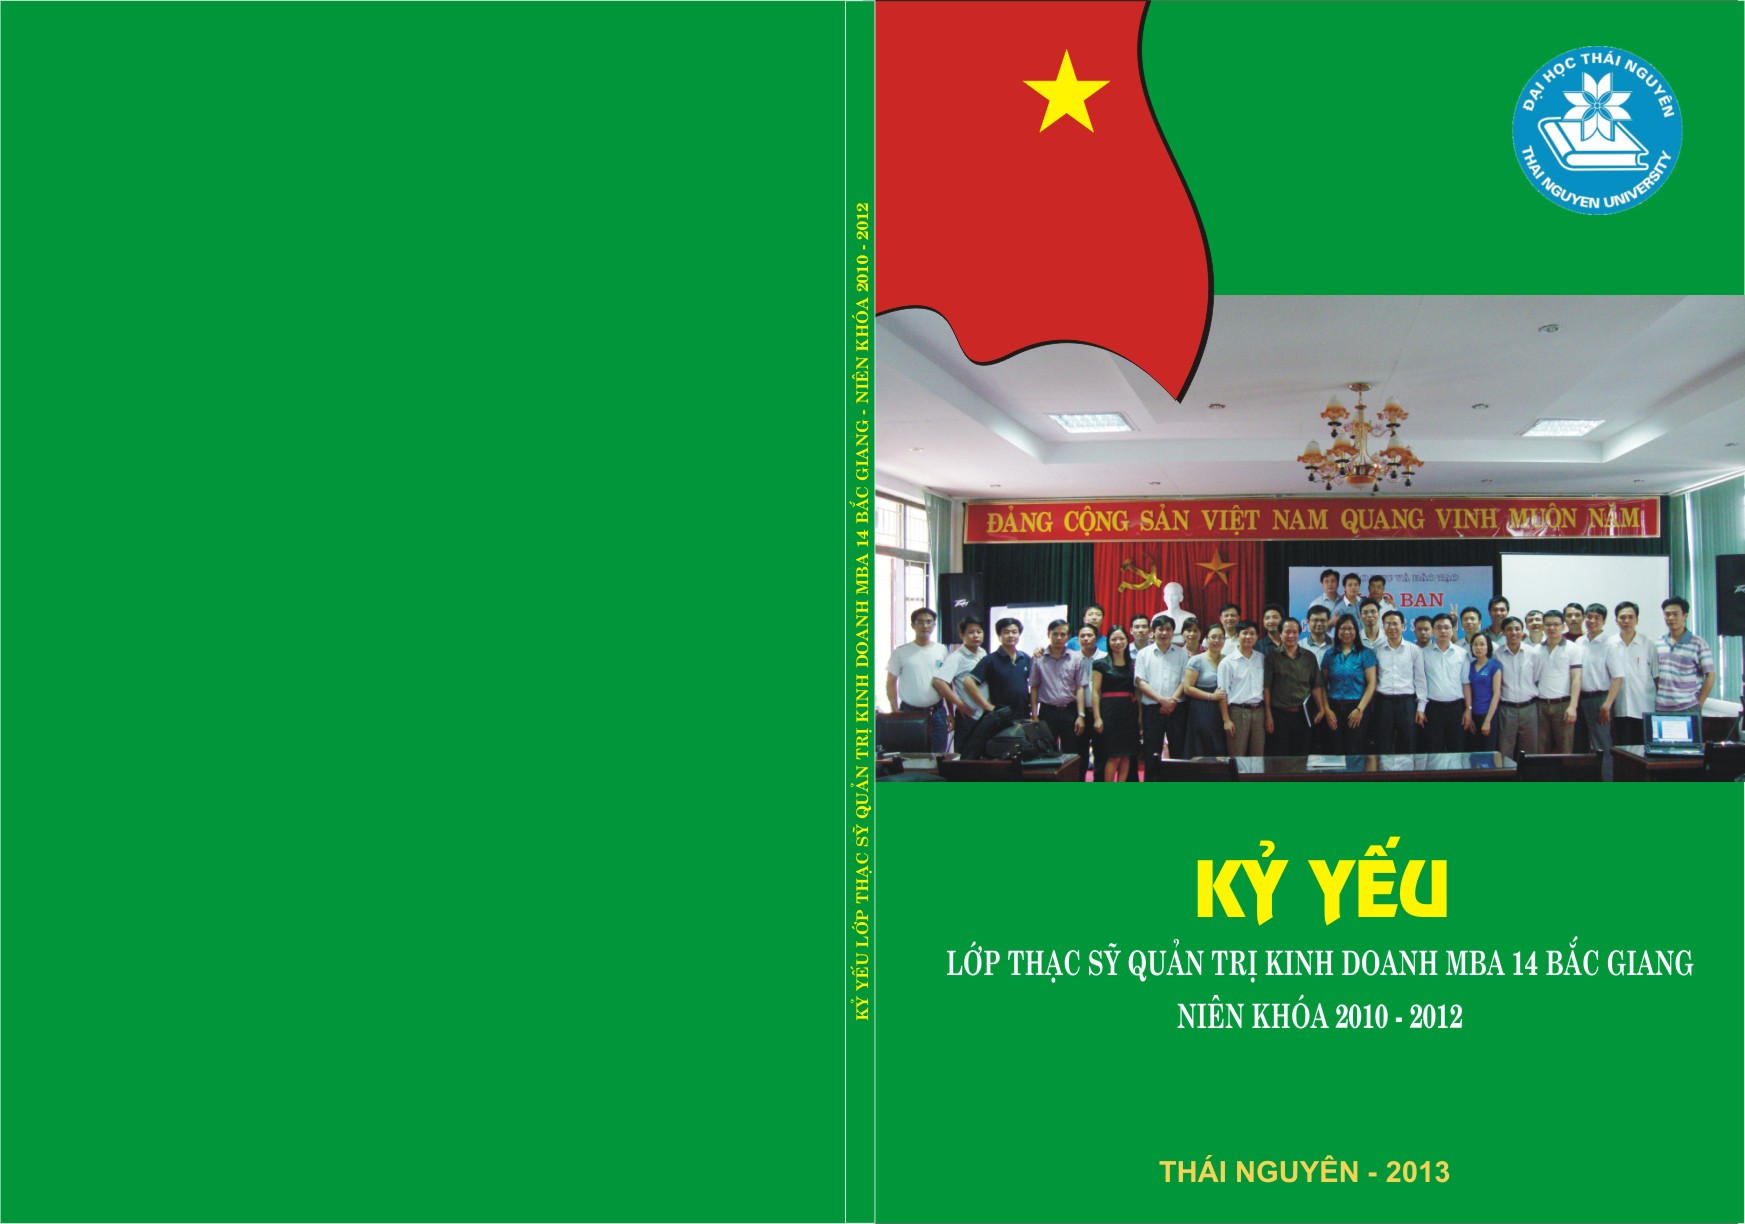 In kỉ yếu - In Rồng Việt Nam - Công Ty TNHH Văn Hóa Rồng Việt Nam